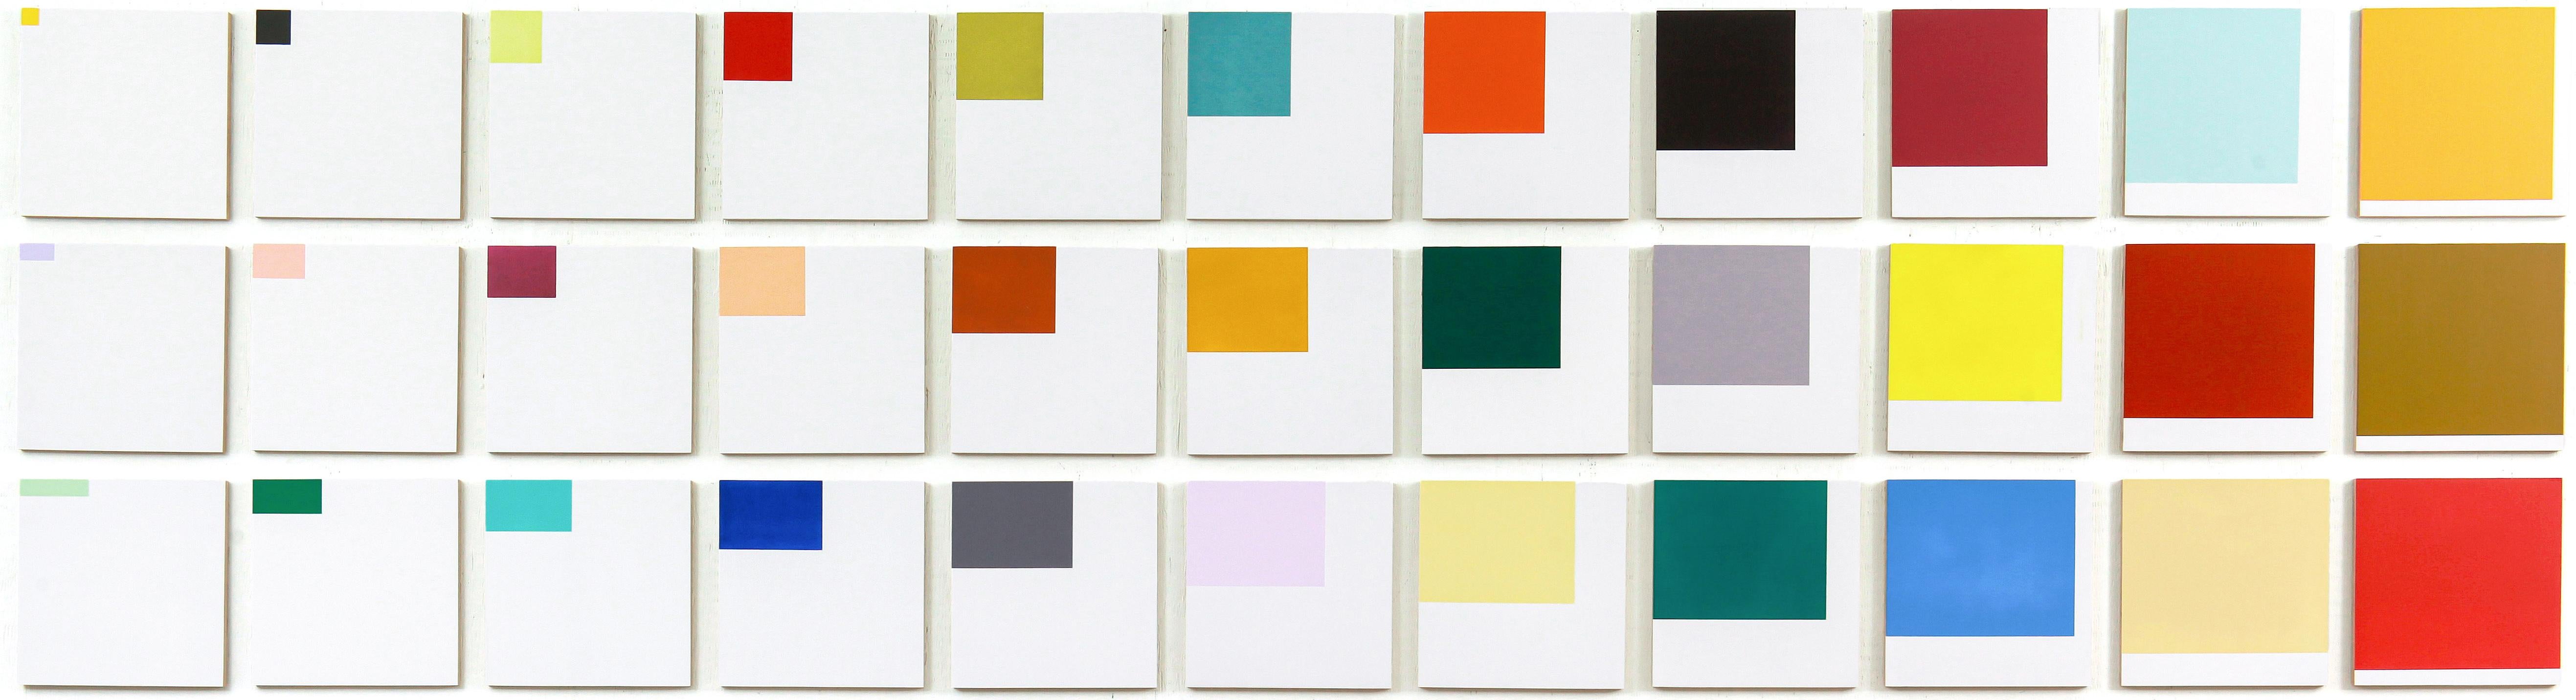 Increments - farbenfrohe, großformatige Anordnung, kleine Quadrate, Acryl auf Tafeln (Abstrakt), Painting, von Milly Ristvedt